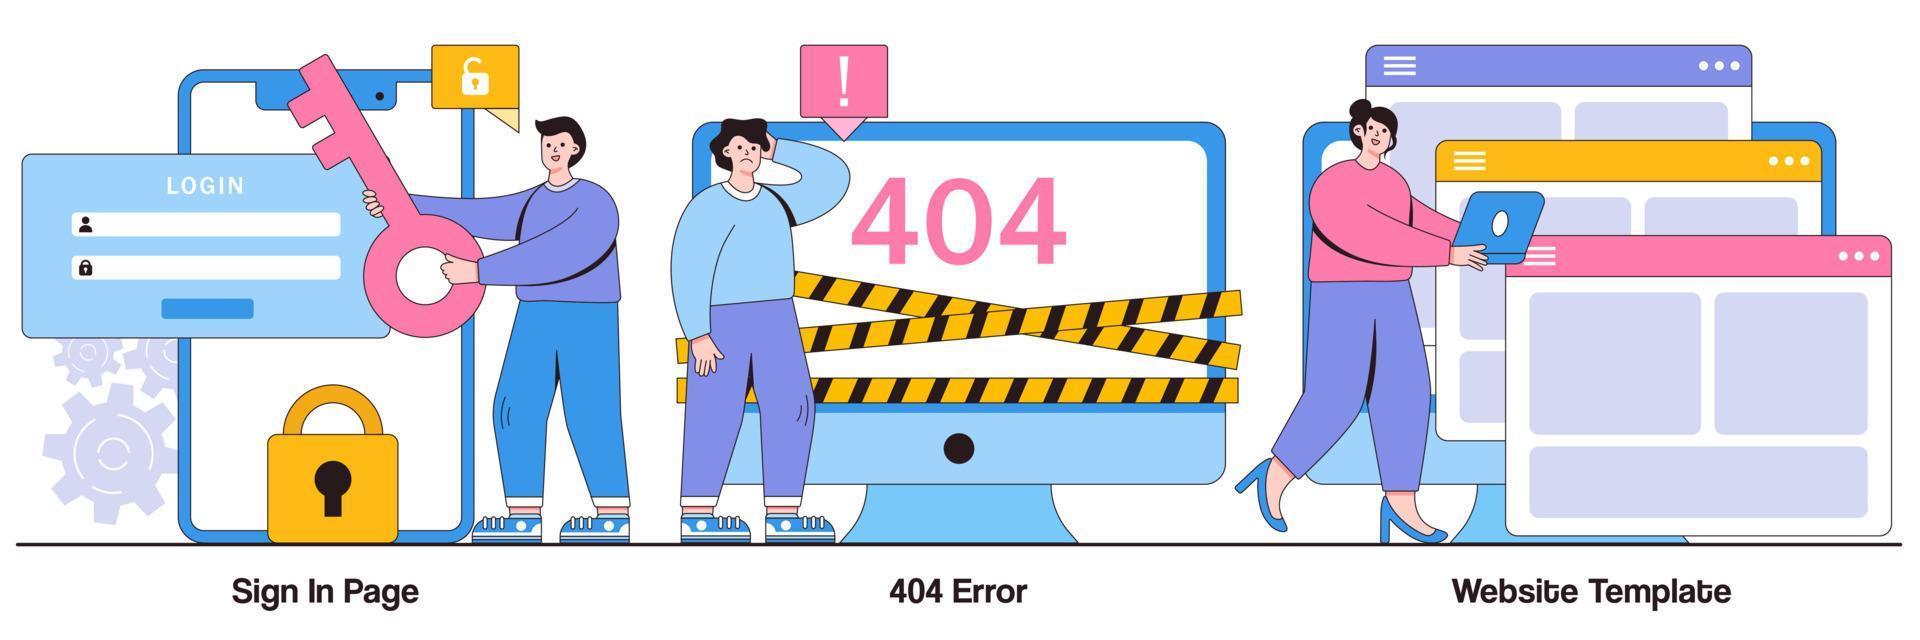 aanmeldpagina, 404-fout, websitesjabloonconcept met mensenkarakter. website pagina interface vector illustratie set. gebruikersaanmeldingsformulier, ui, nieuwe accountregistratie, bestemmingspagina, webdesign